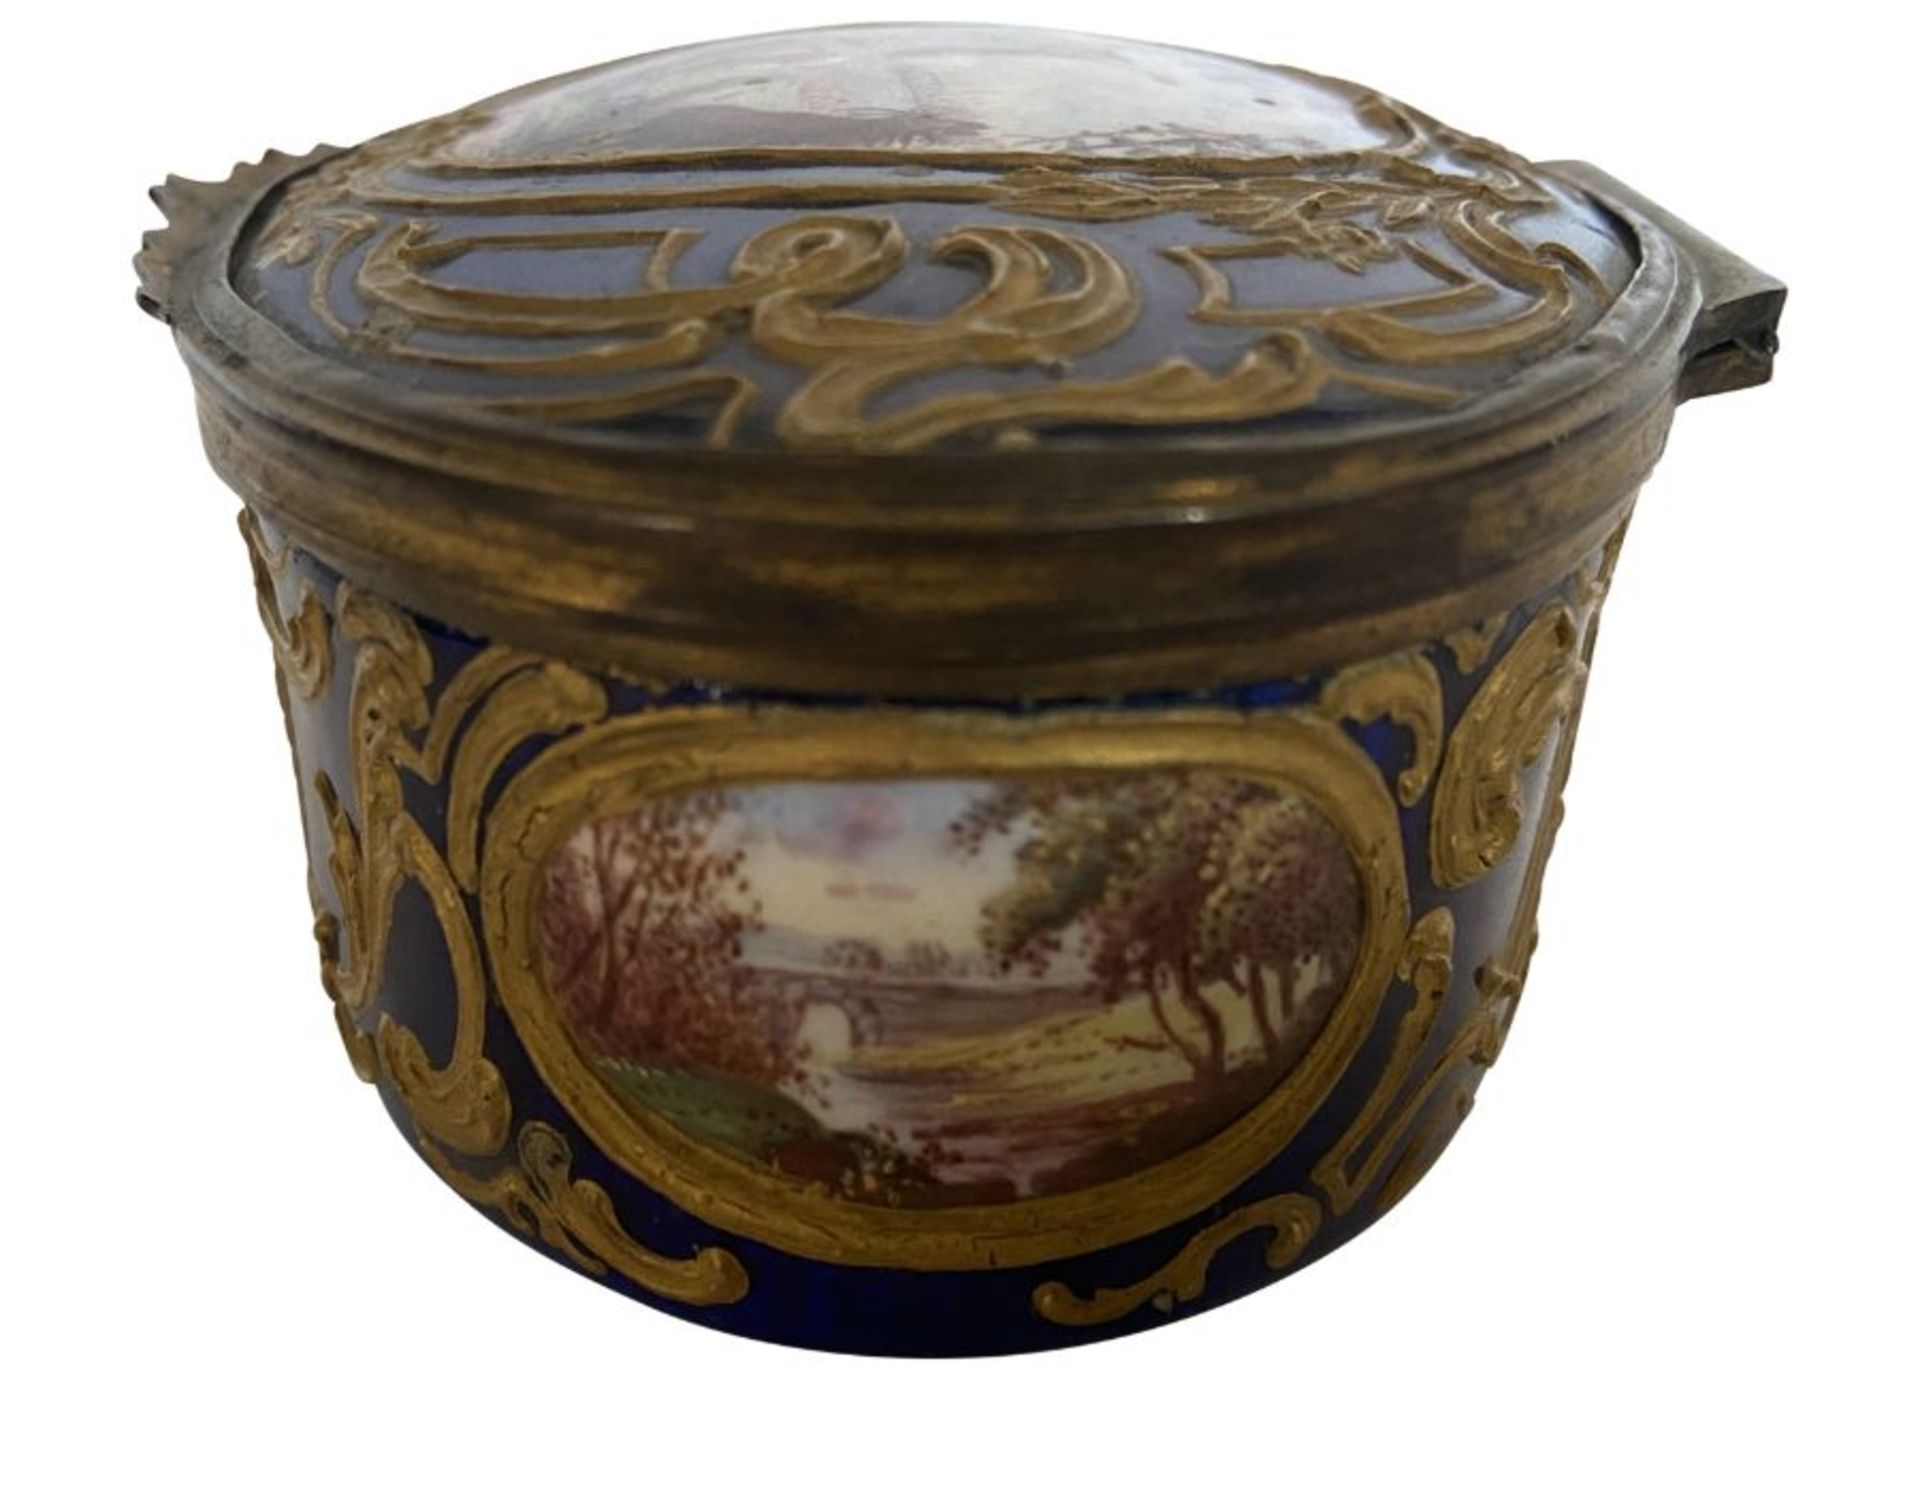 An 18th century oval Birmingham or South Staffordshire enamel box